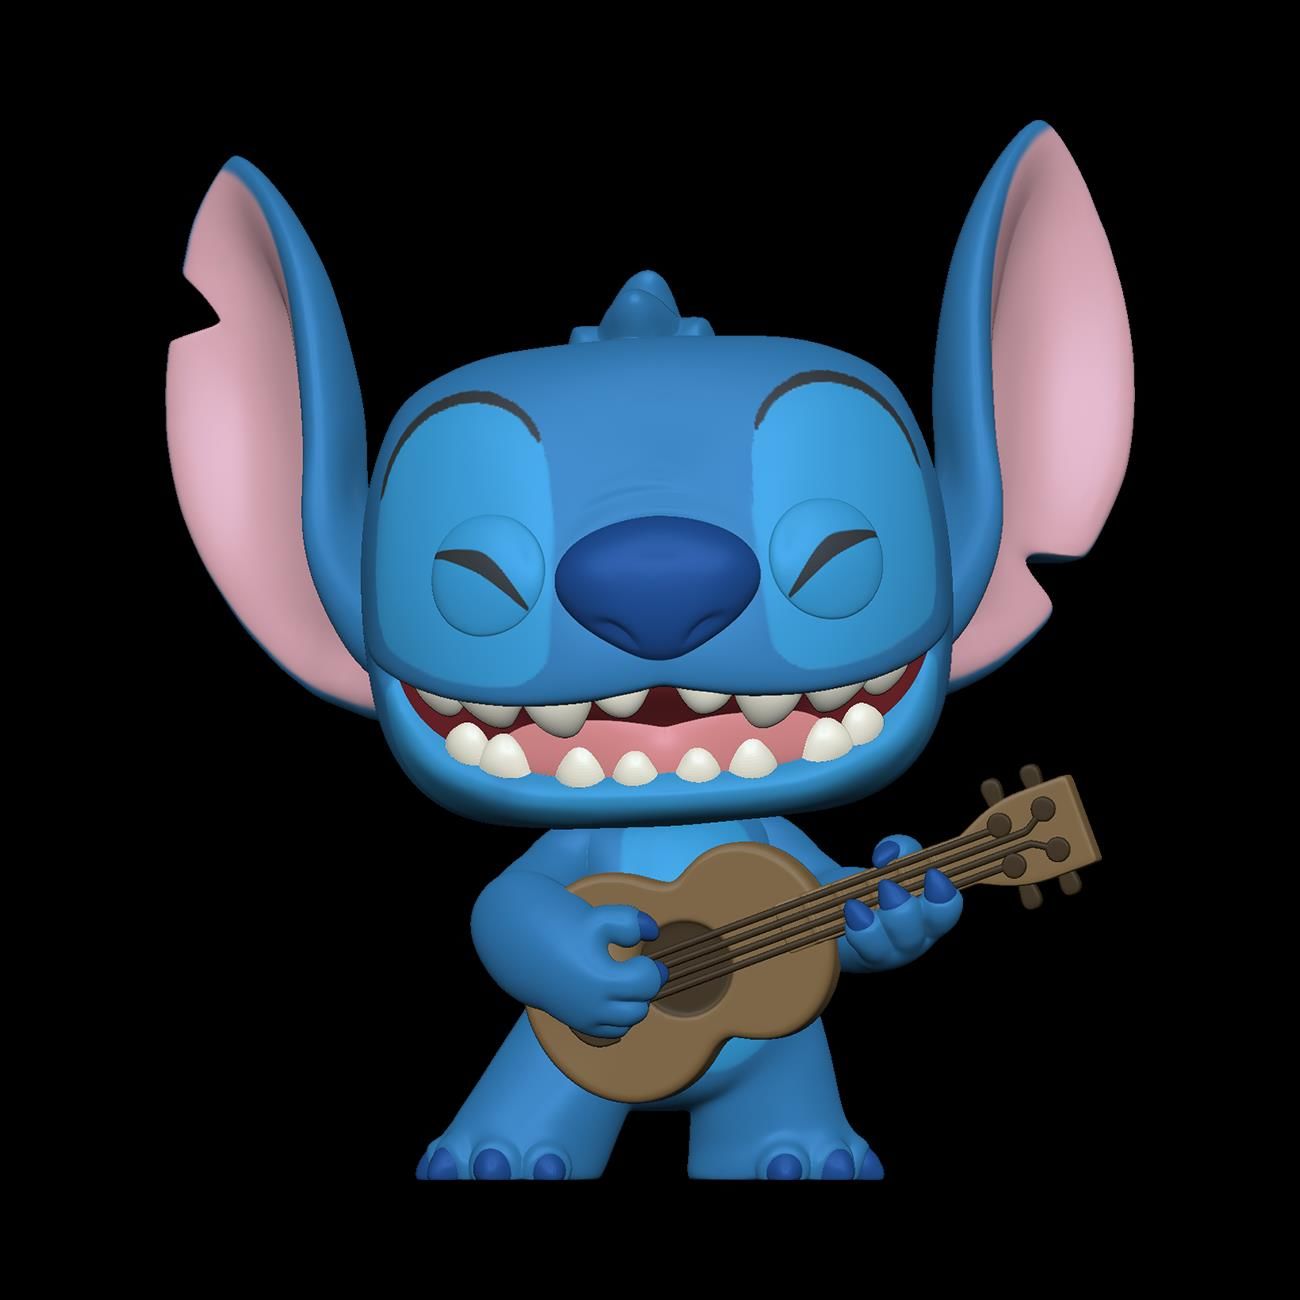 Funko Pop! Disney: Lilo & Stitch - Stitch with Ukelele